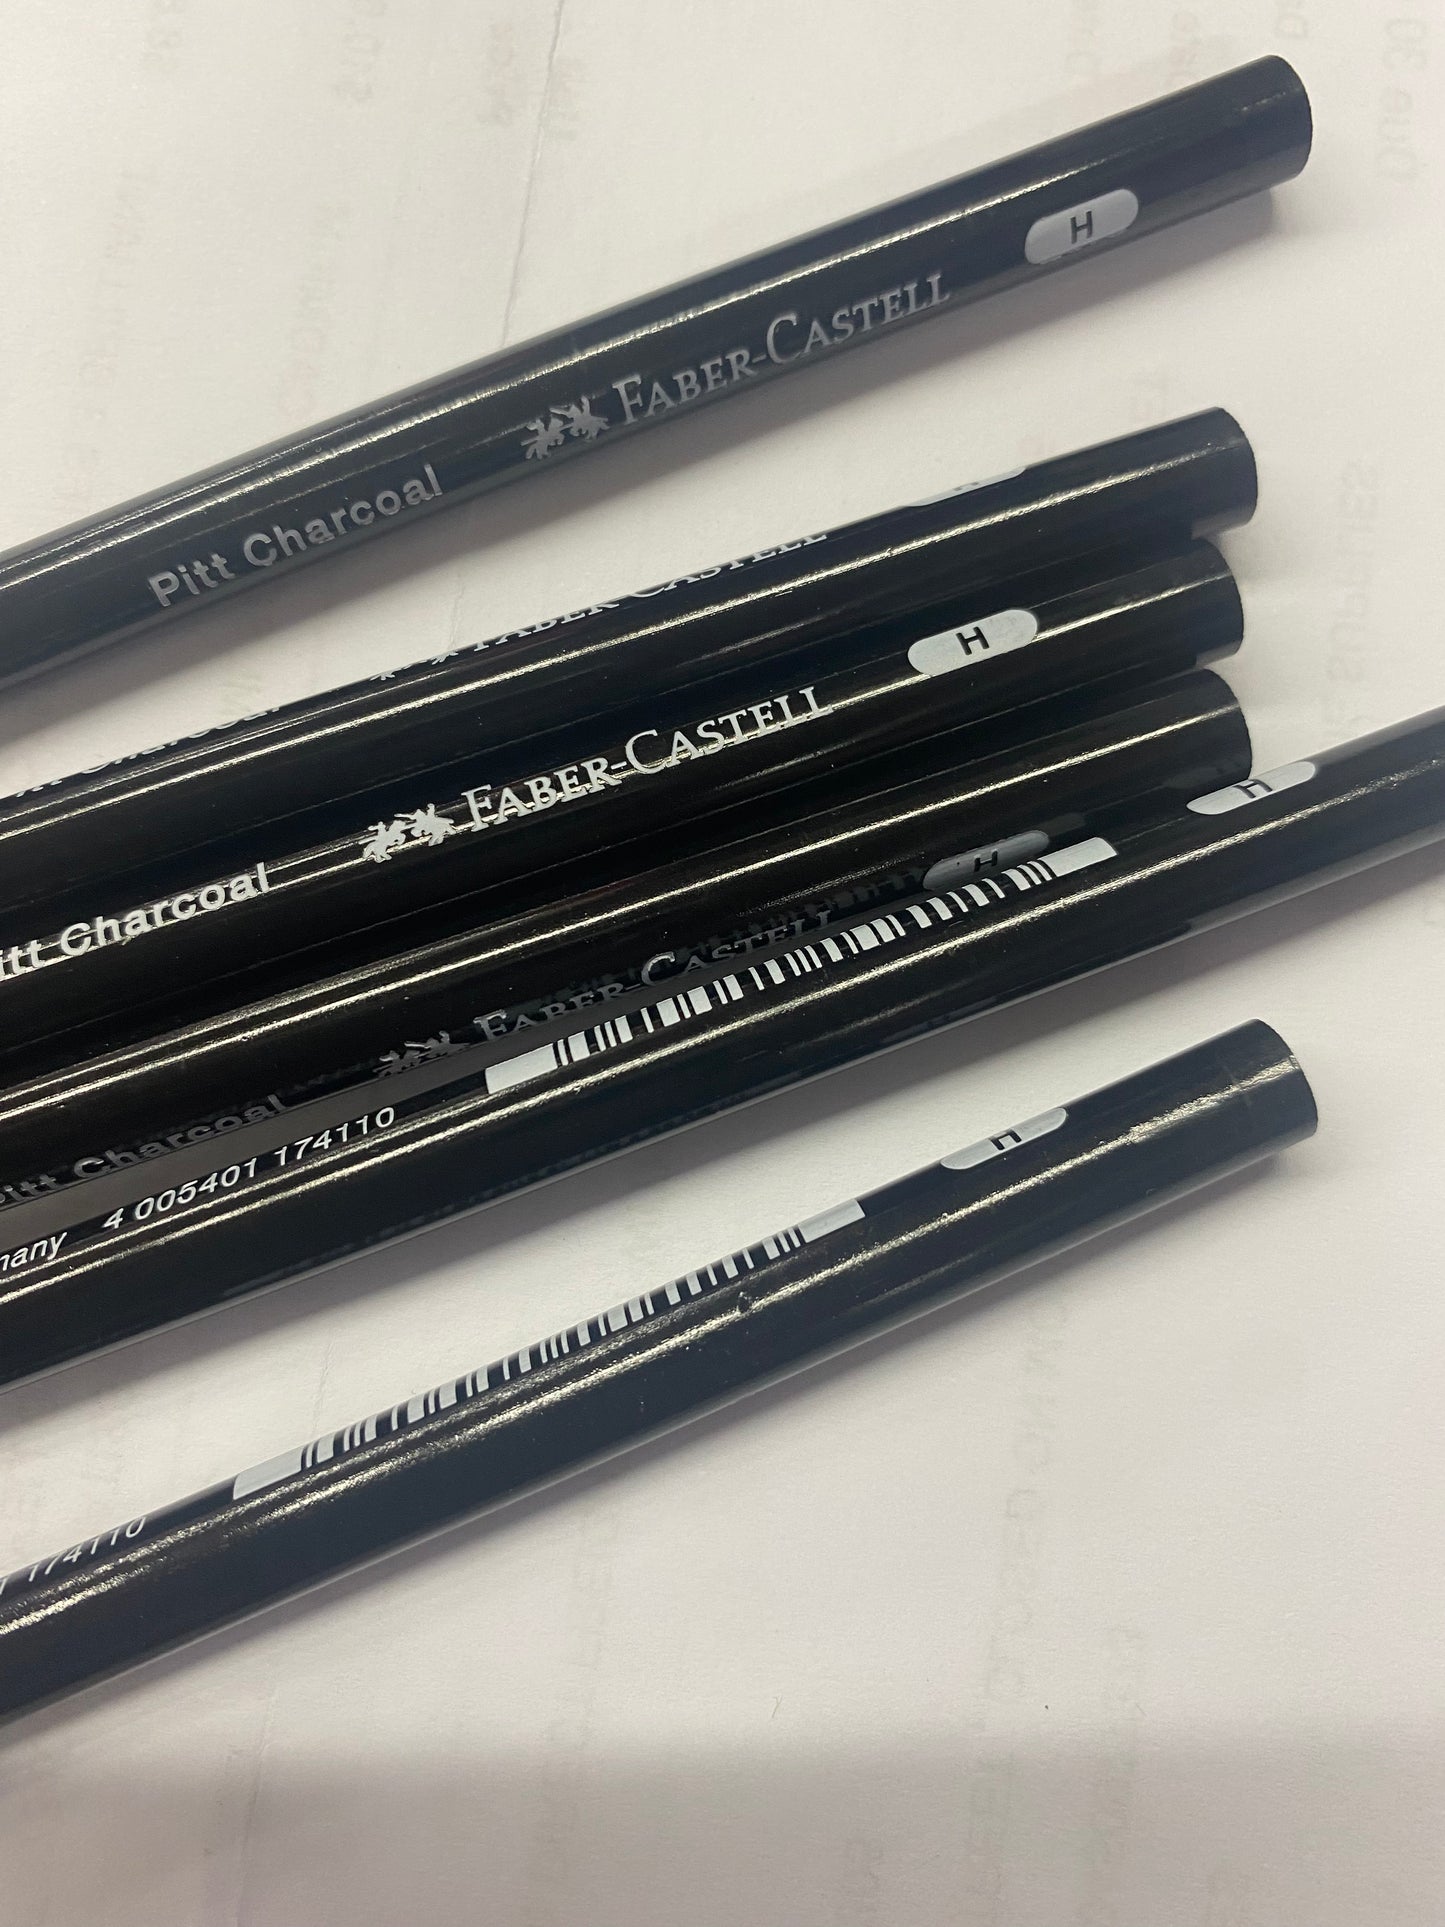 Pitt Charcoal Pencils